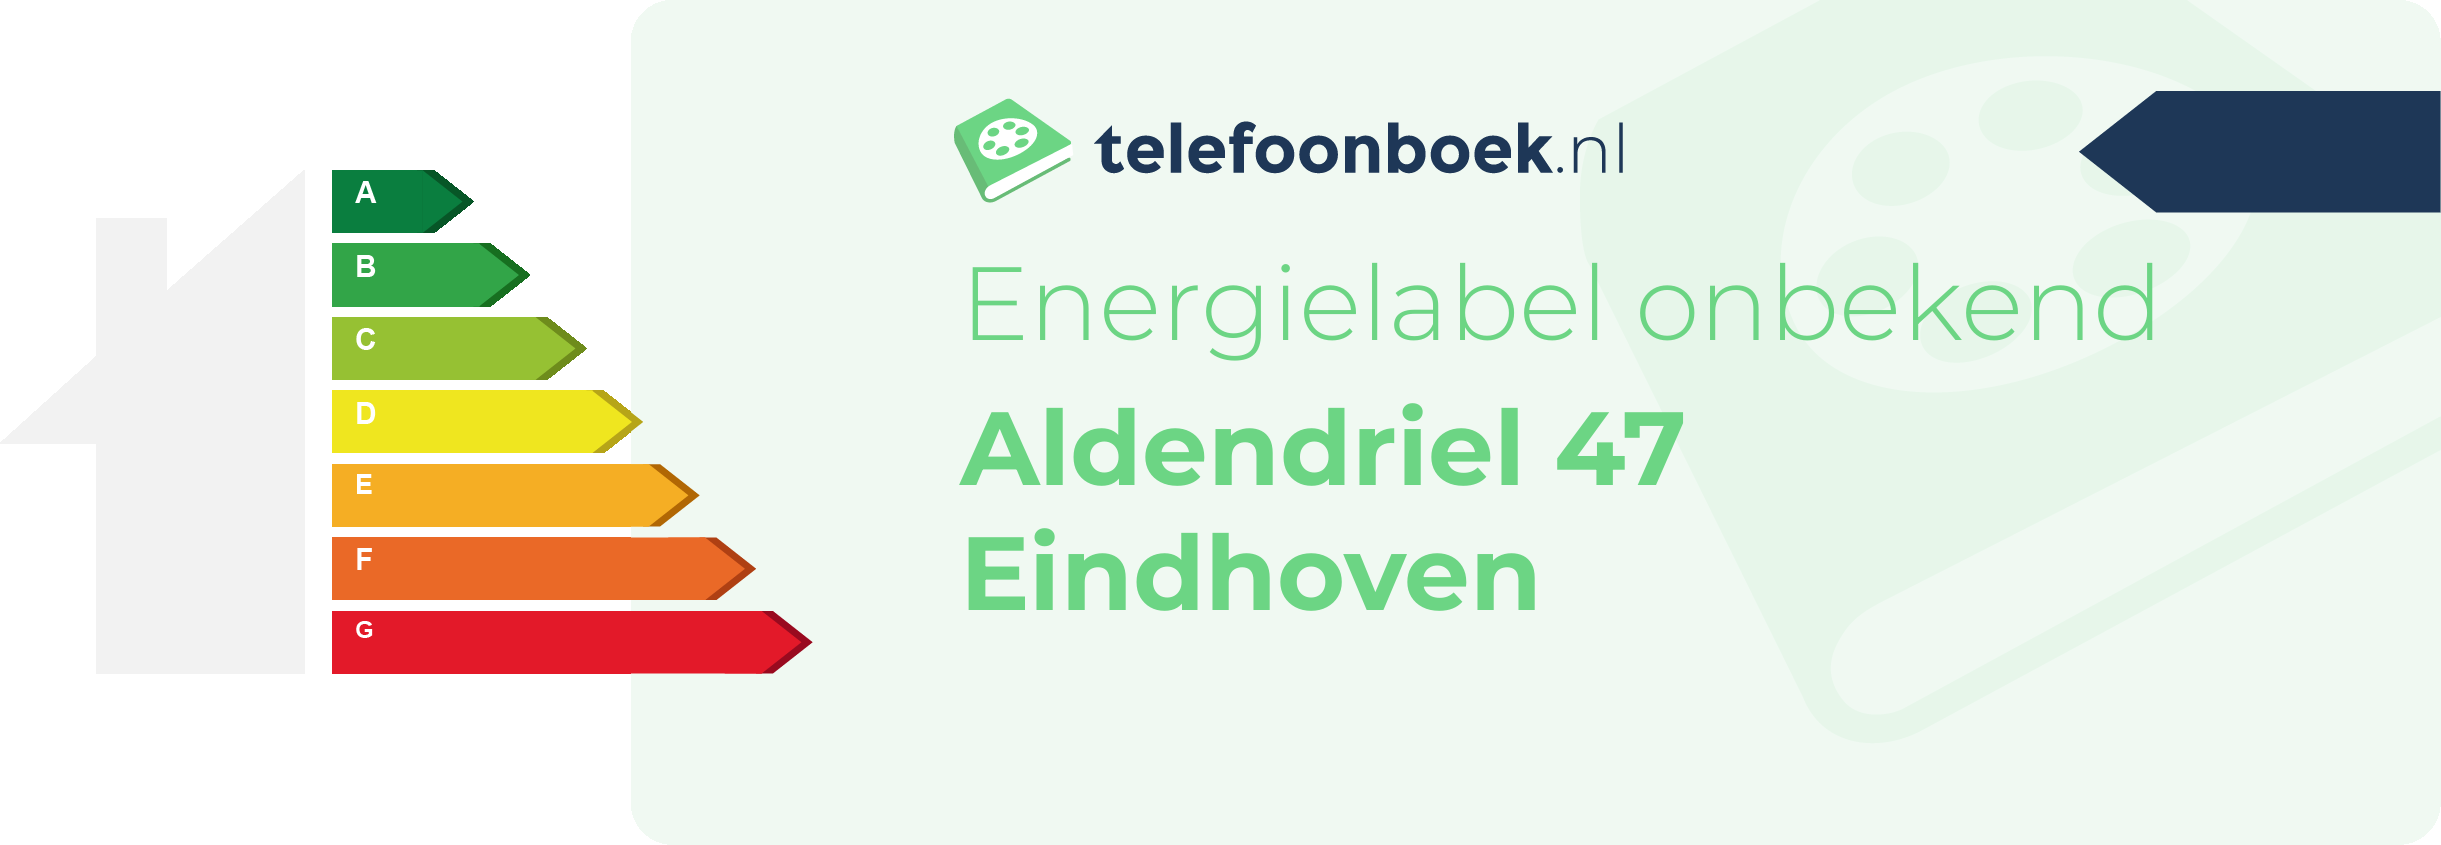 Energielabel Aldendriel 47 Eindhoven